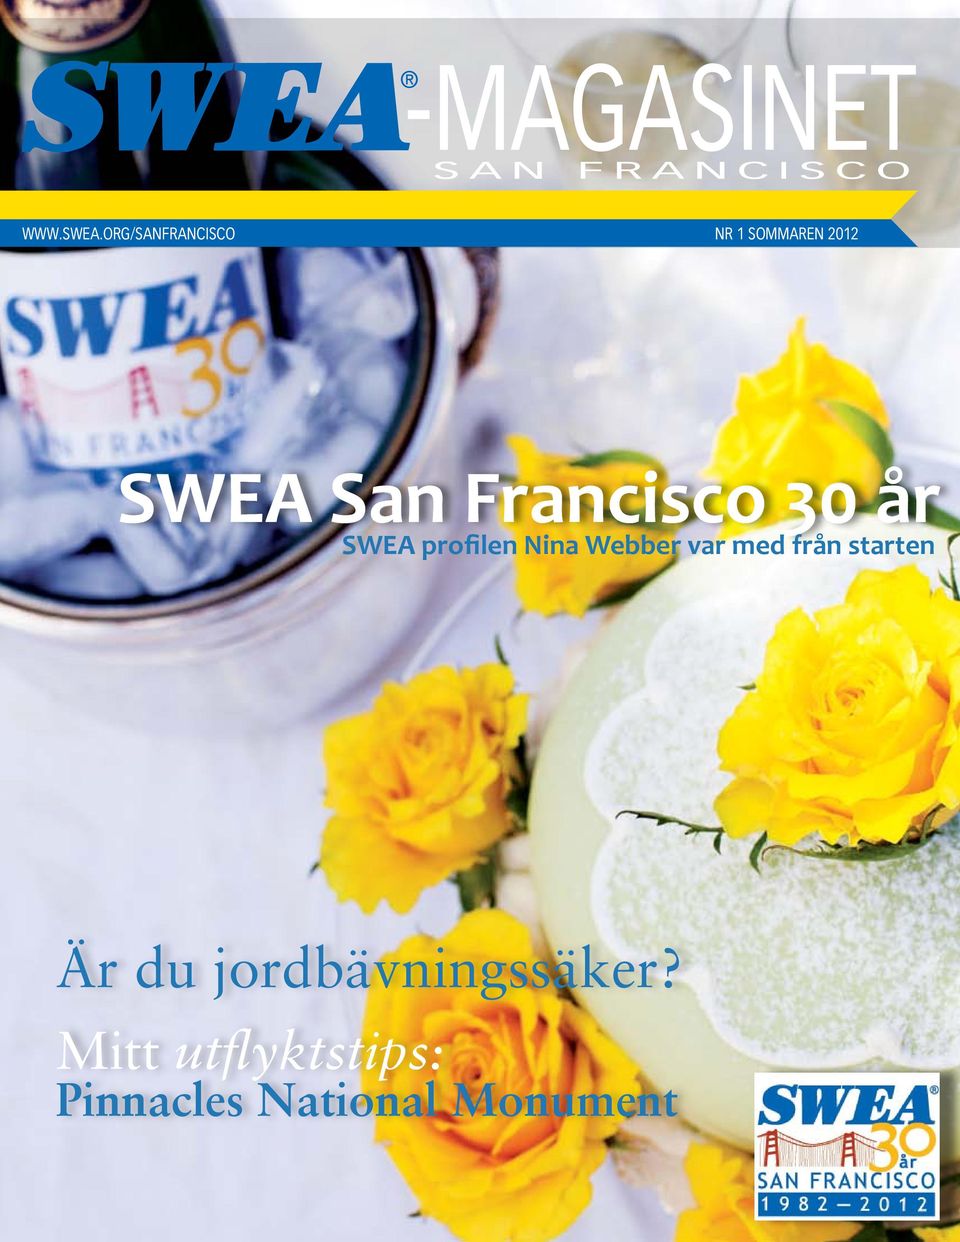 Francisco 30 år SWEA profilen Nina Webber var med